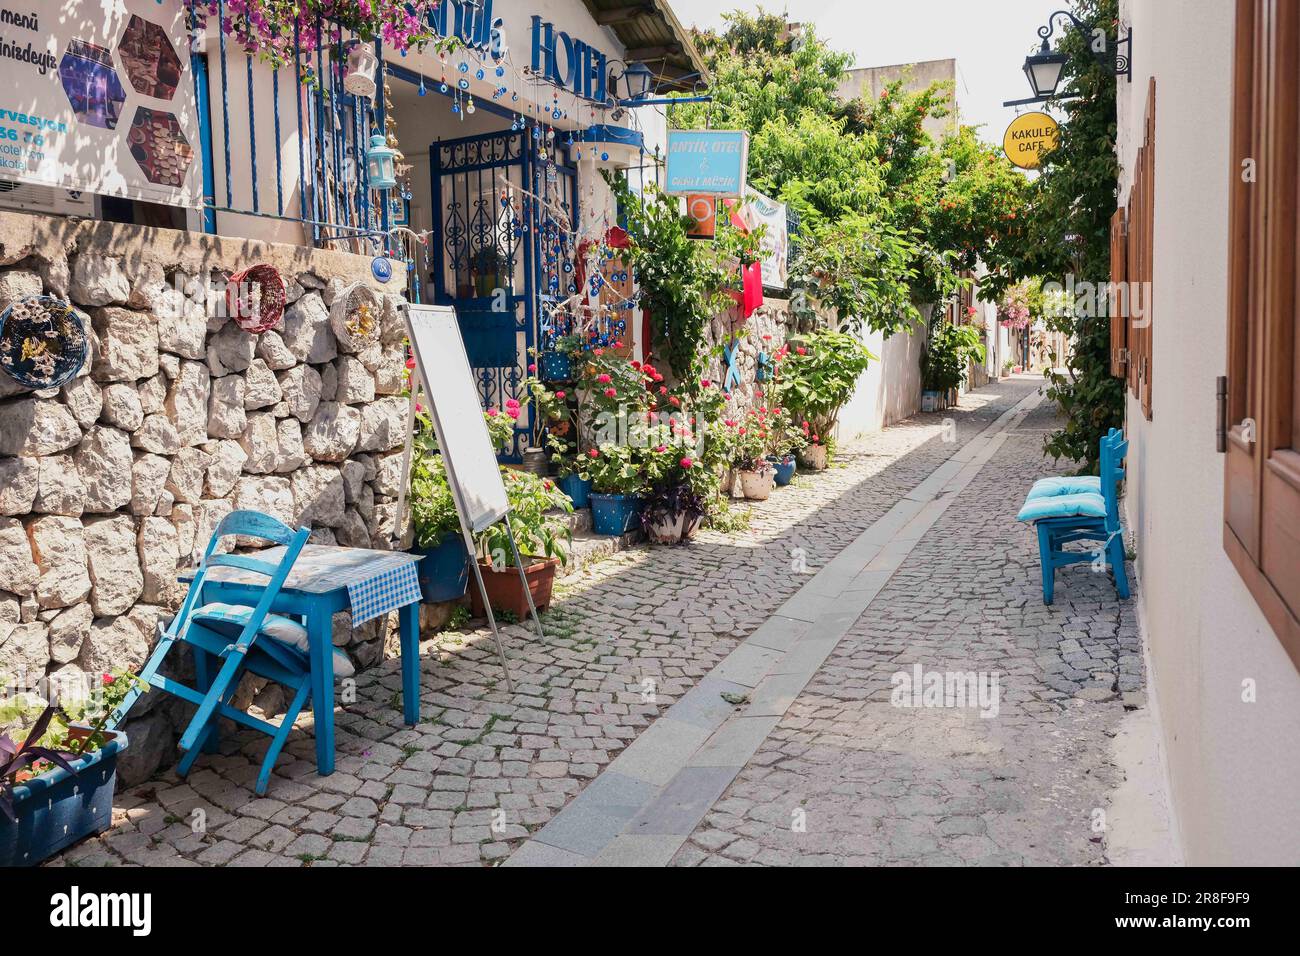 Sigacik strade, città sul mare, tranquilla vacanza estiva, strade fiorite, Seferihisar, Smirne, Turchia Foto Stock